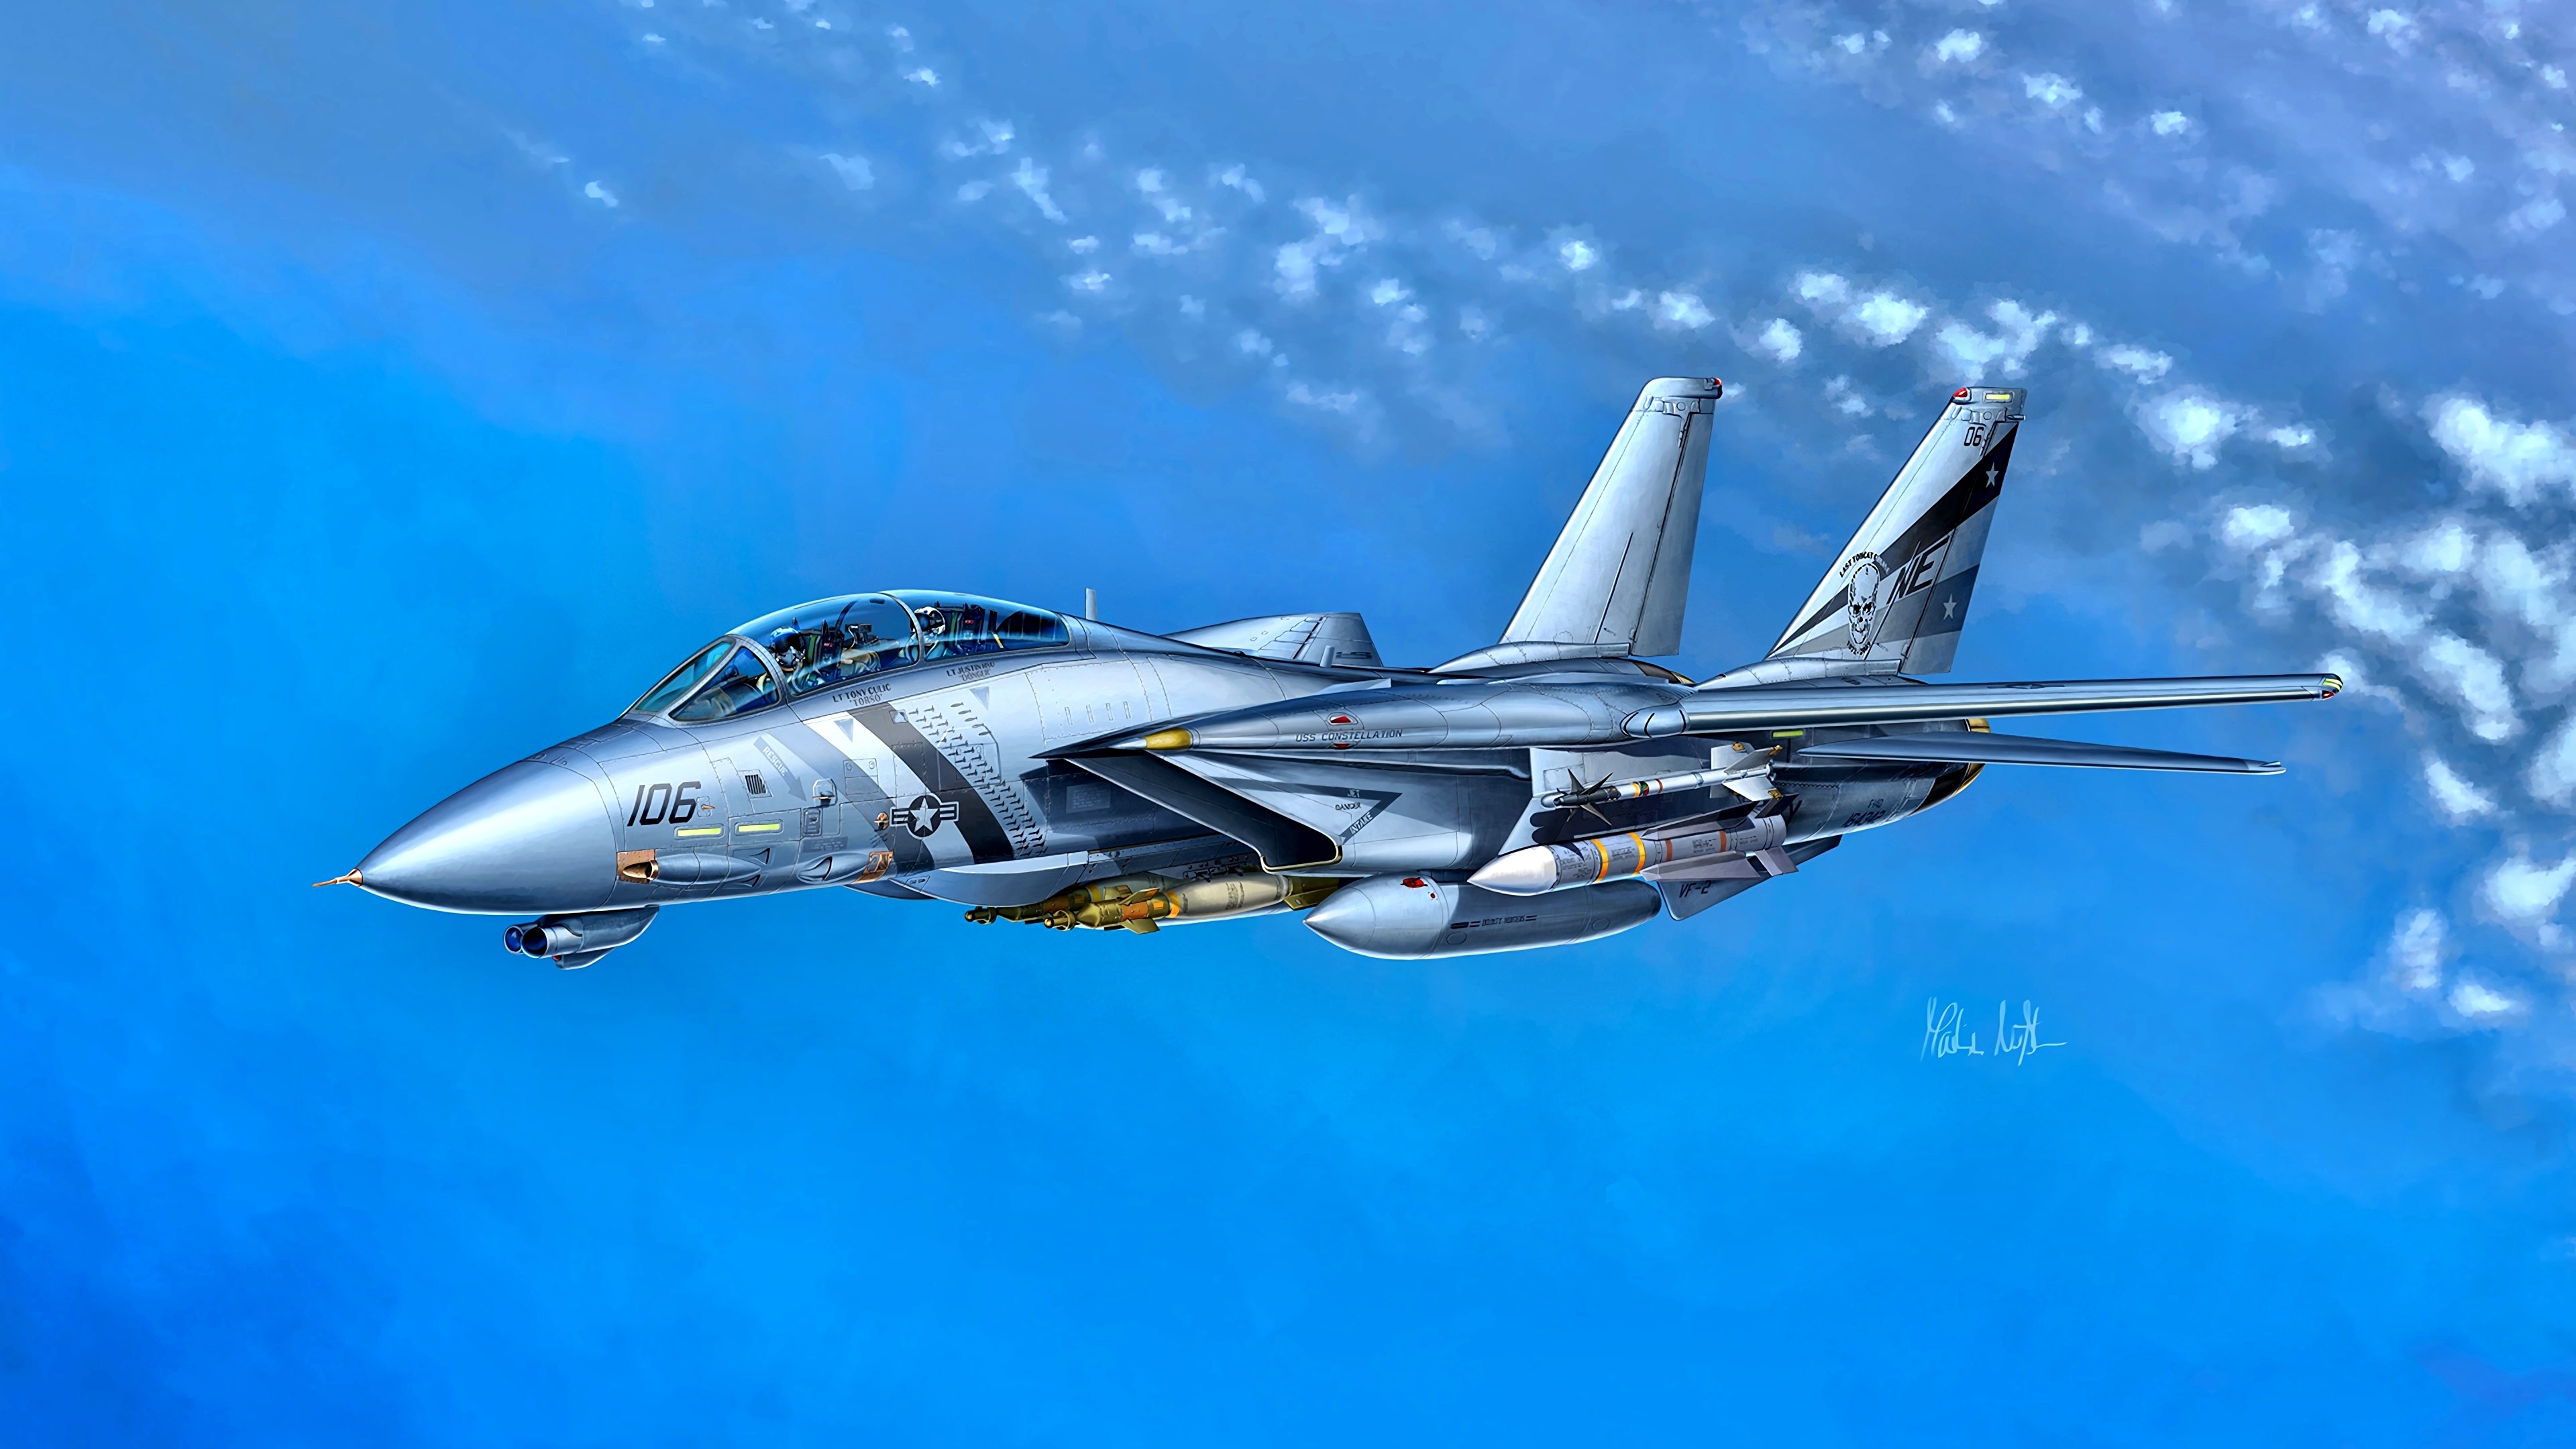 壁紙 3840x2160 描かれた壁紙 戦闘機 飛行機 Grumman F 14d Super Tomcat Vf 2 アメリカの 航空 ダウンロード 写真